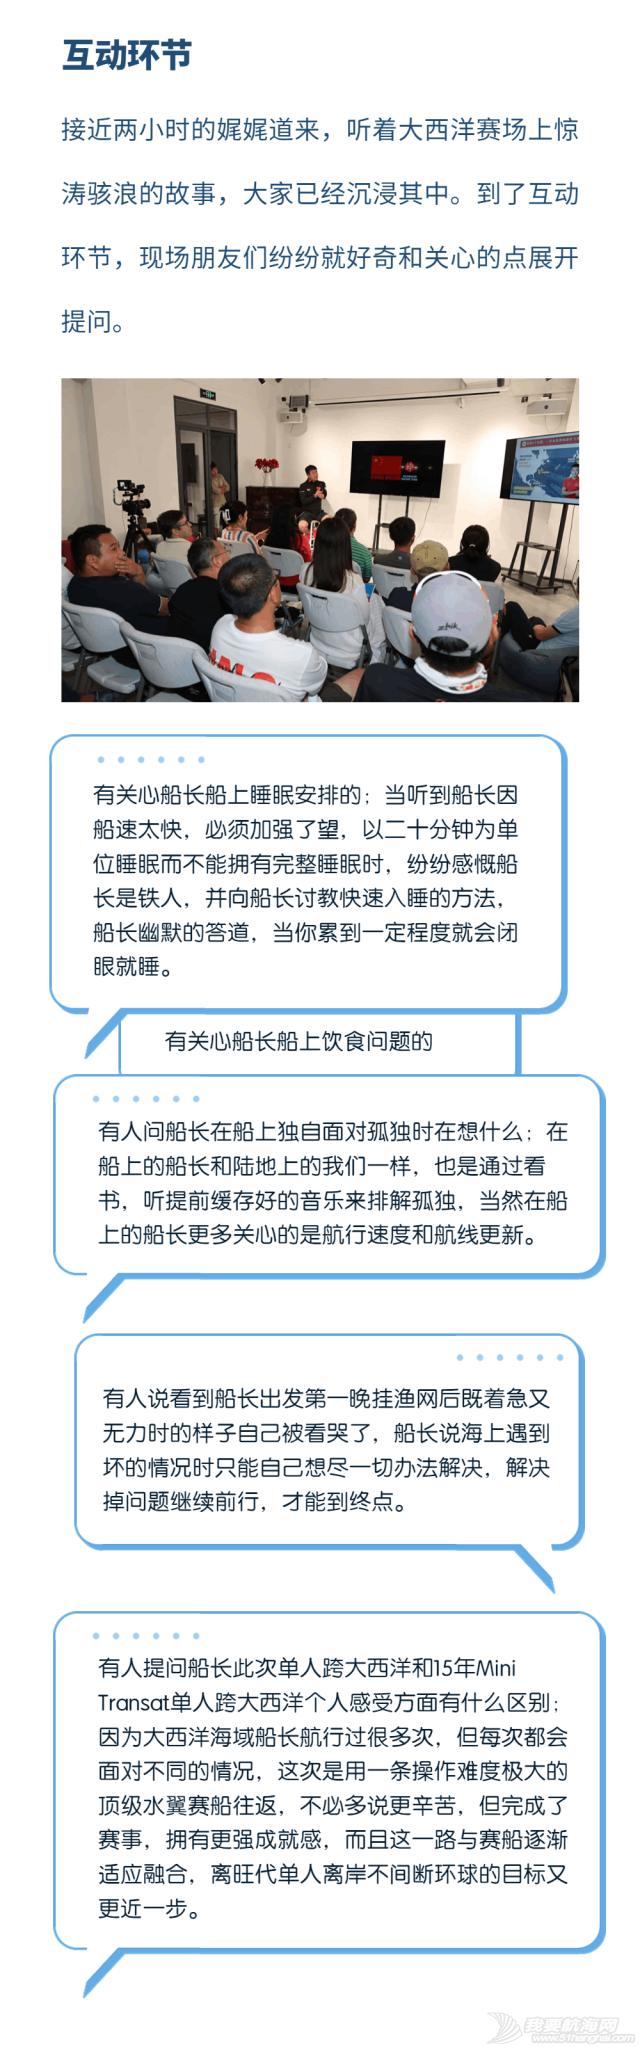 中国梦之队海南站分享会---用世界语言,讲好中国故事w9.jpg